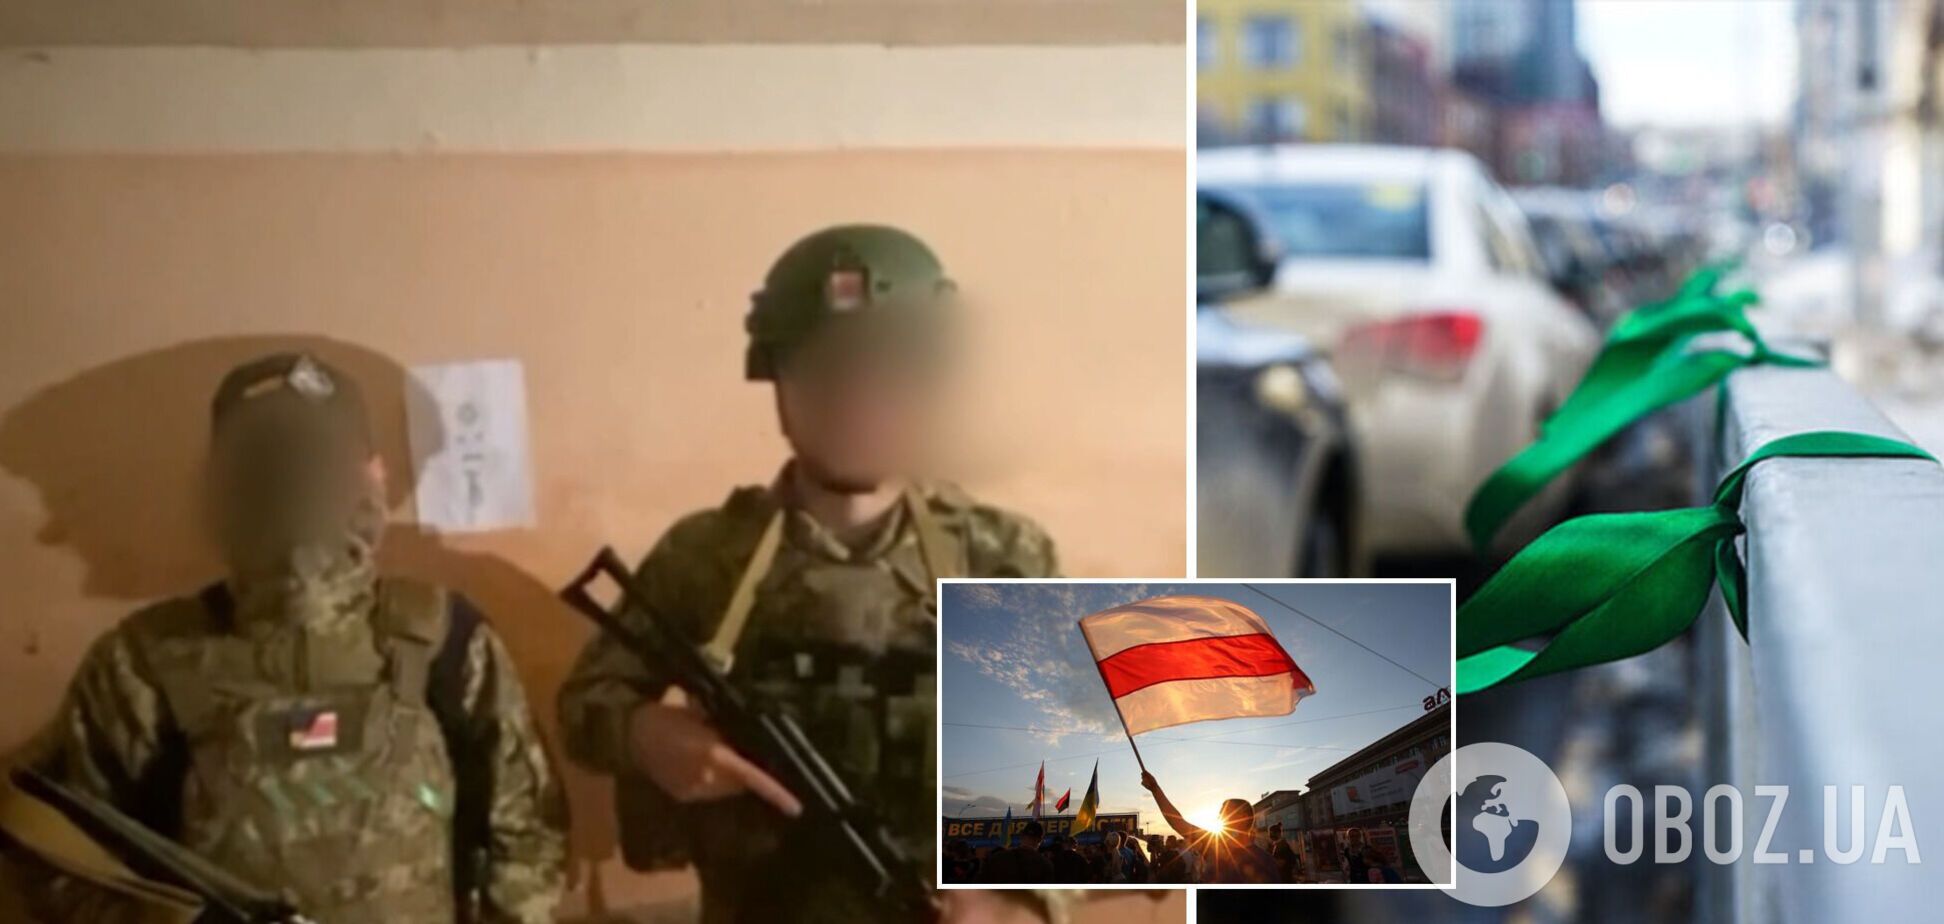 Белорусы, служащие в ВСУ, обратились к соотечественникам и призвали поддержать антивоенное движение 'Зеленая лента'. Видео